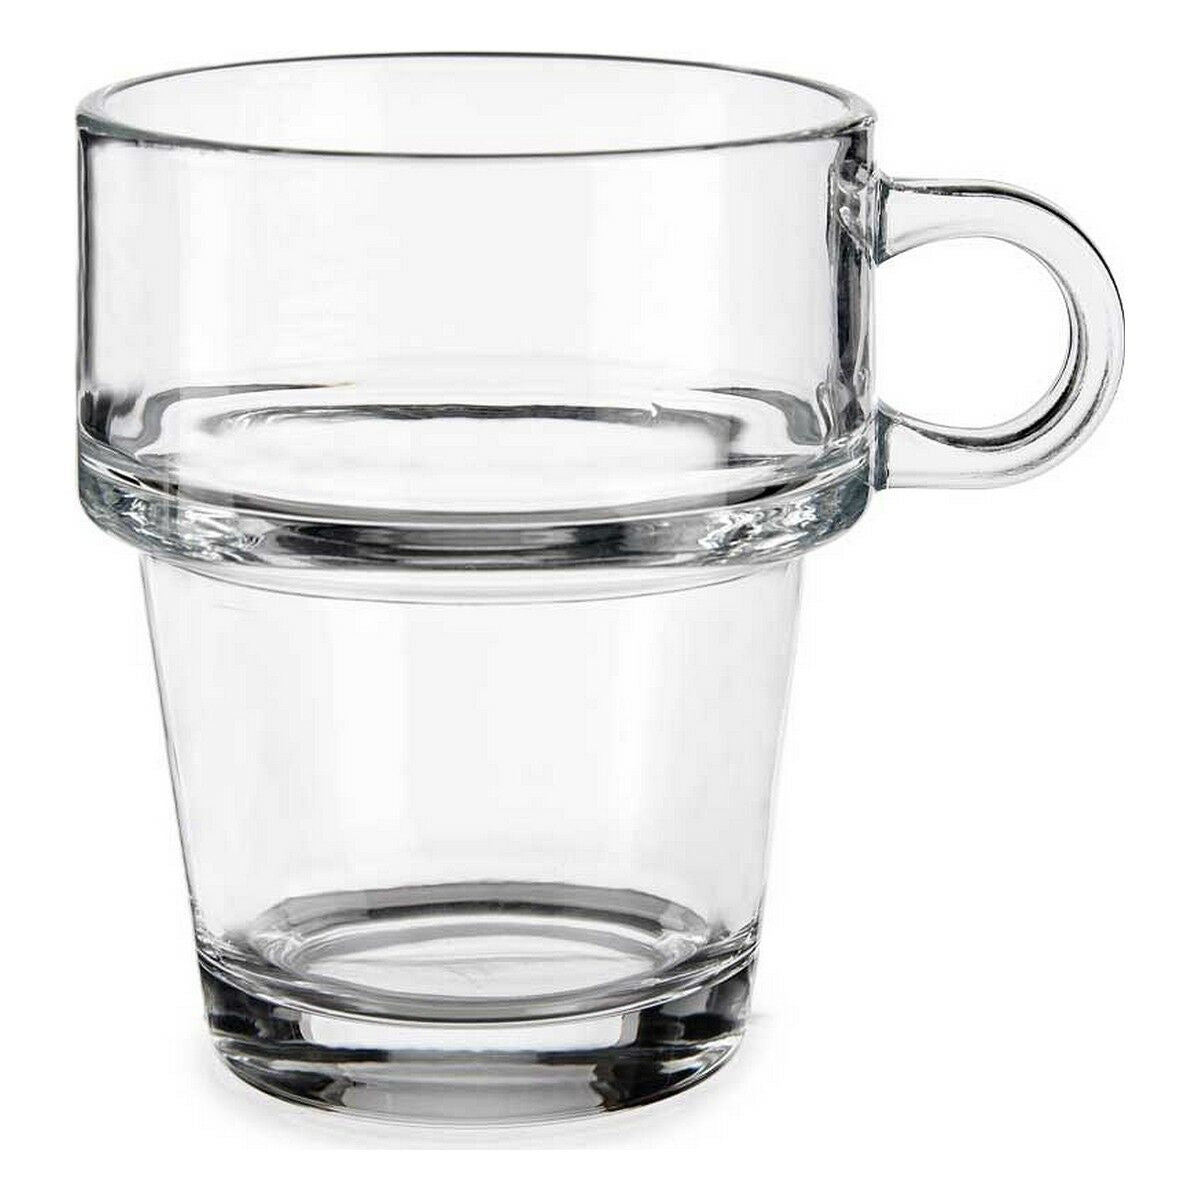 Kop Stapelbar Durchsichtig Glas 270 ml (24 Stück)